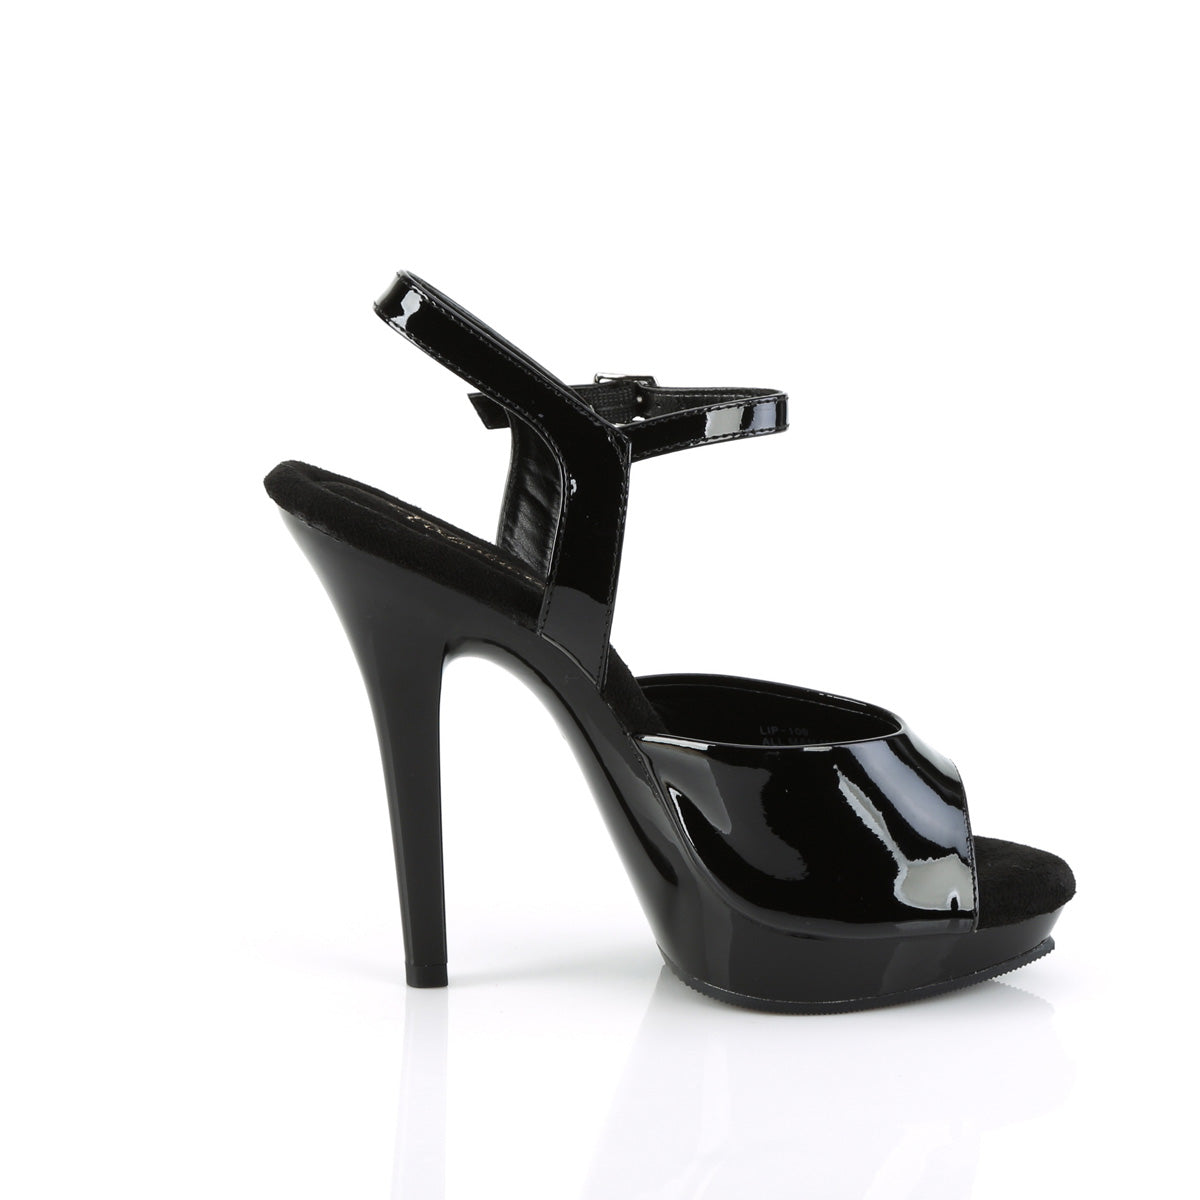 Buy 5 Inch Heels online | Lazada.com.ph